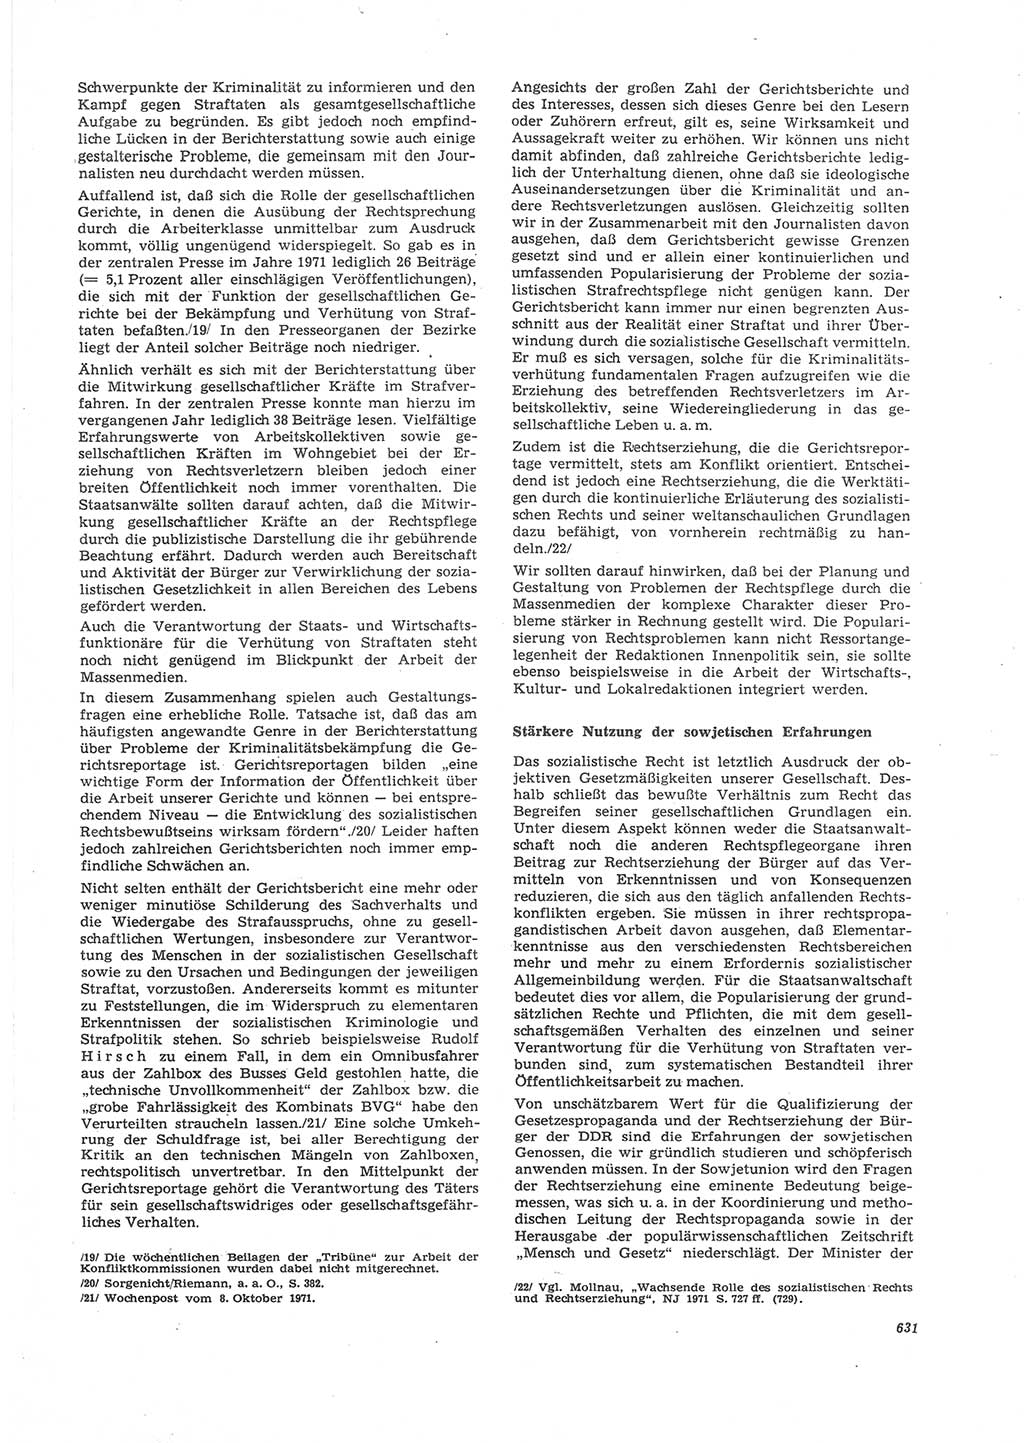 Neue Justiz (NJ), Zeitschrift für Recht und Rechtswissenschaft [Deutsche Demokratische Republik (DDR)], 26. Jahrgang 1972, Seite 631 (NJ DDR 1972, S. 631)